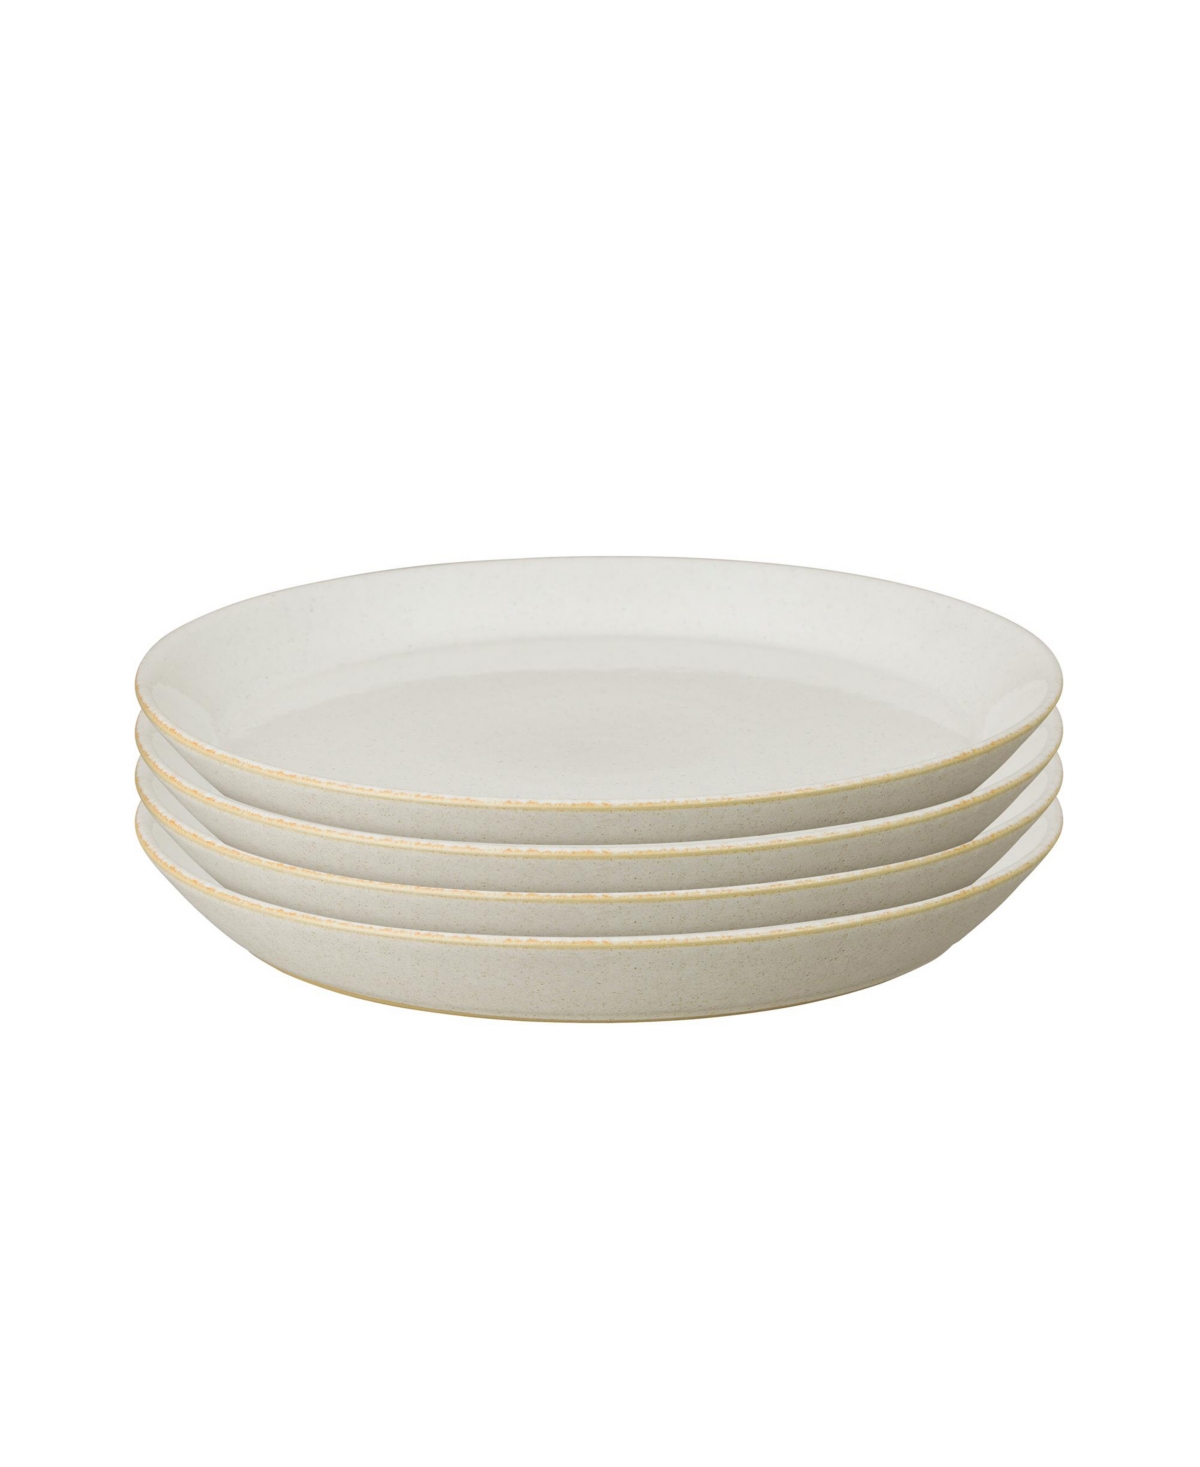 Impression Cream Medium Plate, Set of 4 - Cream